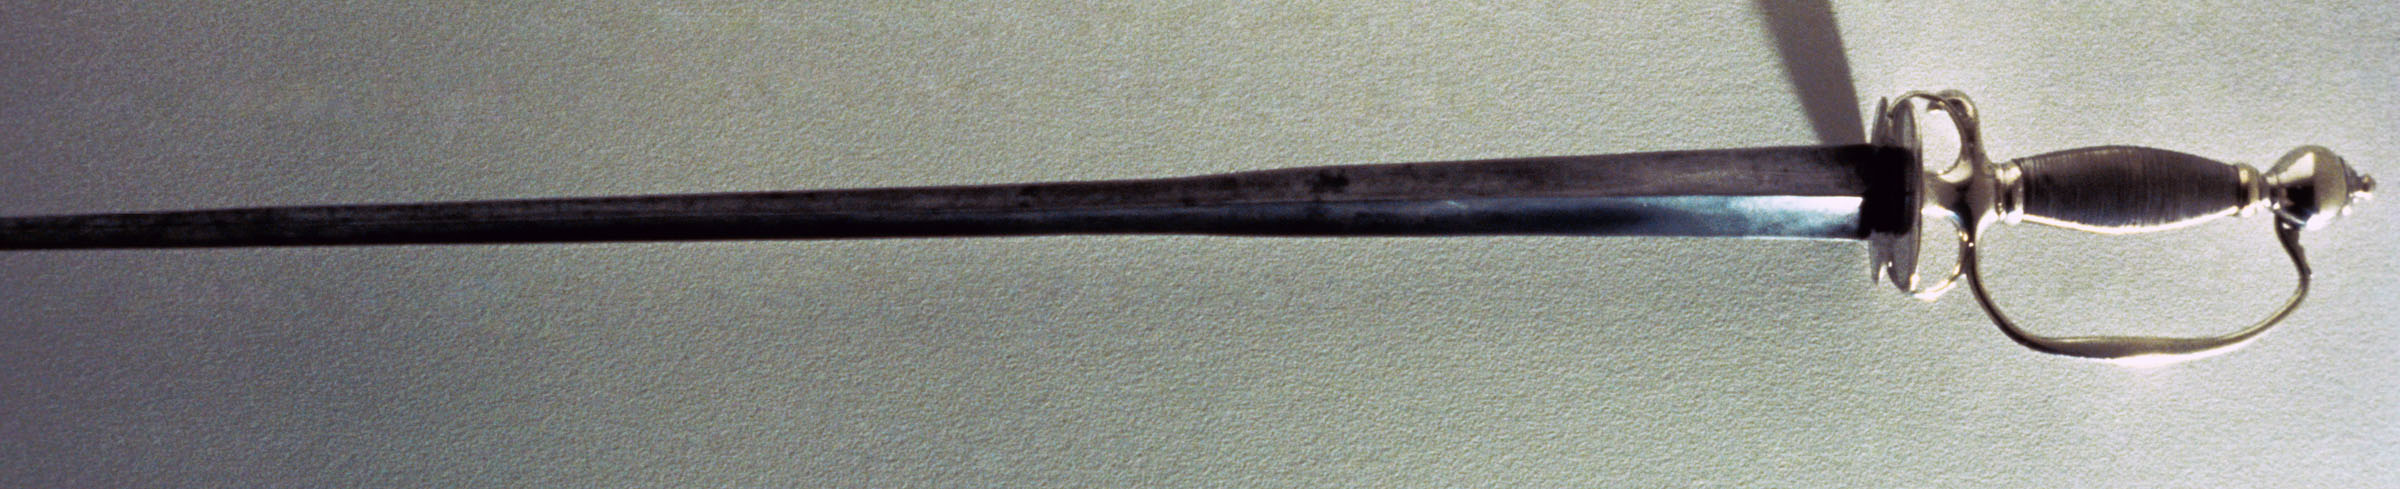 1974.0123 Sword, view 1